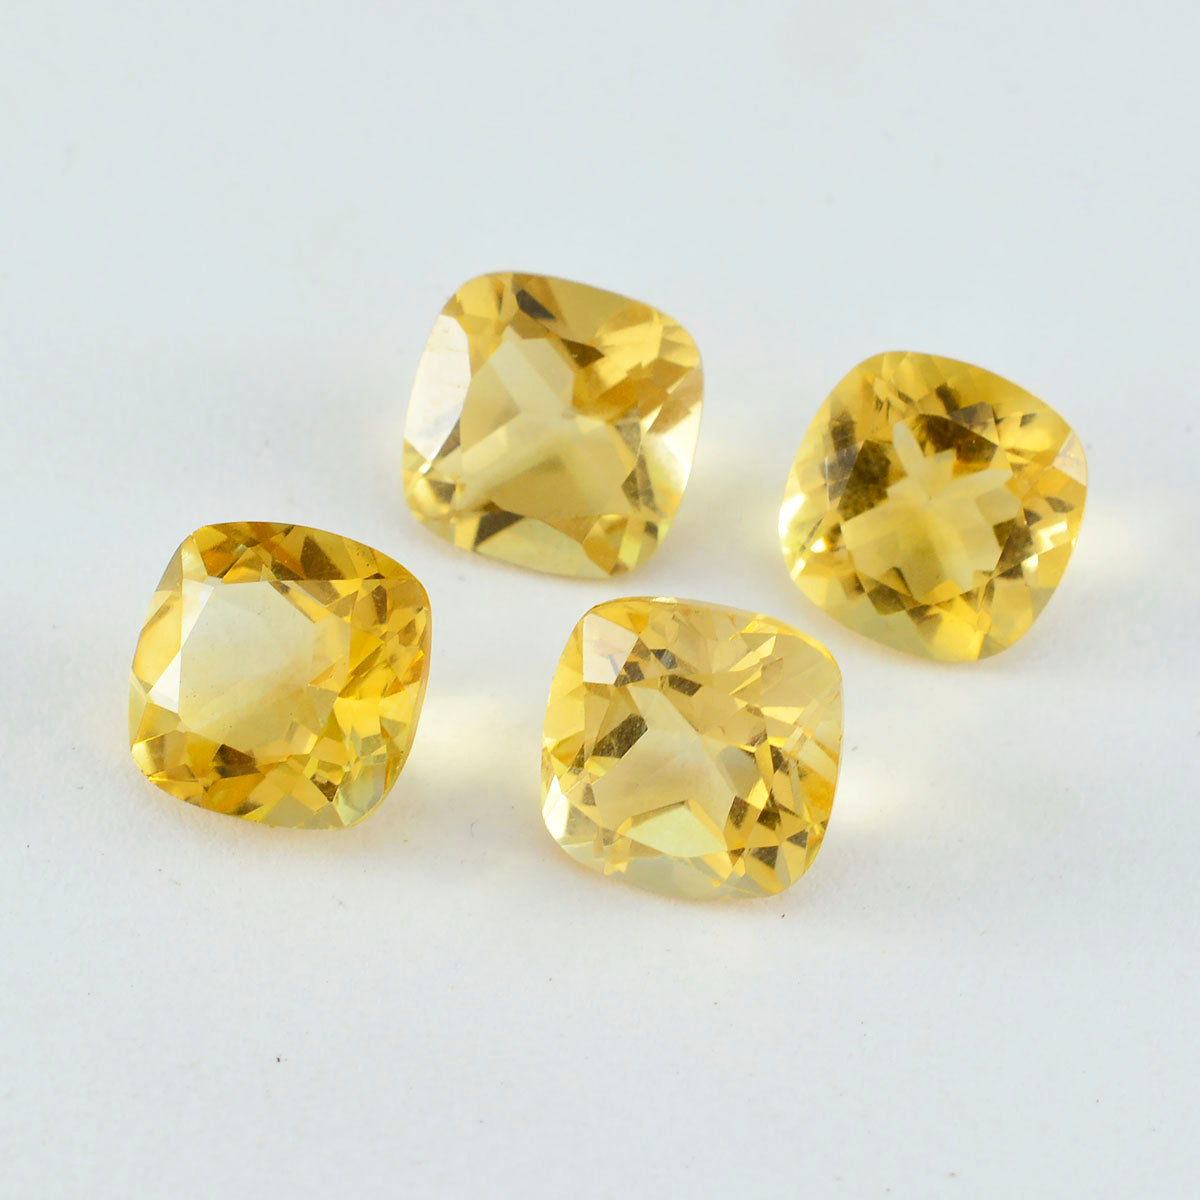 riyogems 1 шт., натуральный желтый цитрин, ограненные 9x9 мм, форма подушки, качество A1, россыпь драгоценных камней